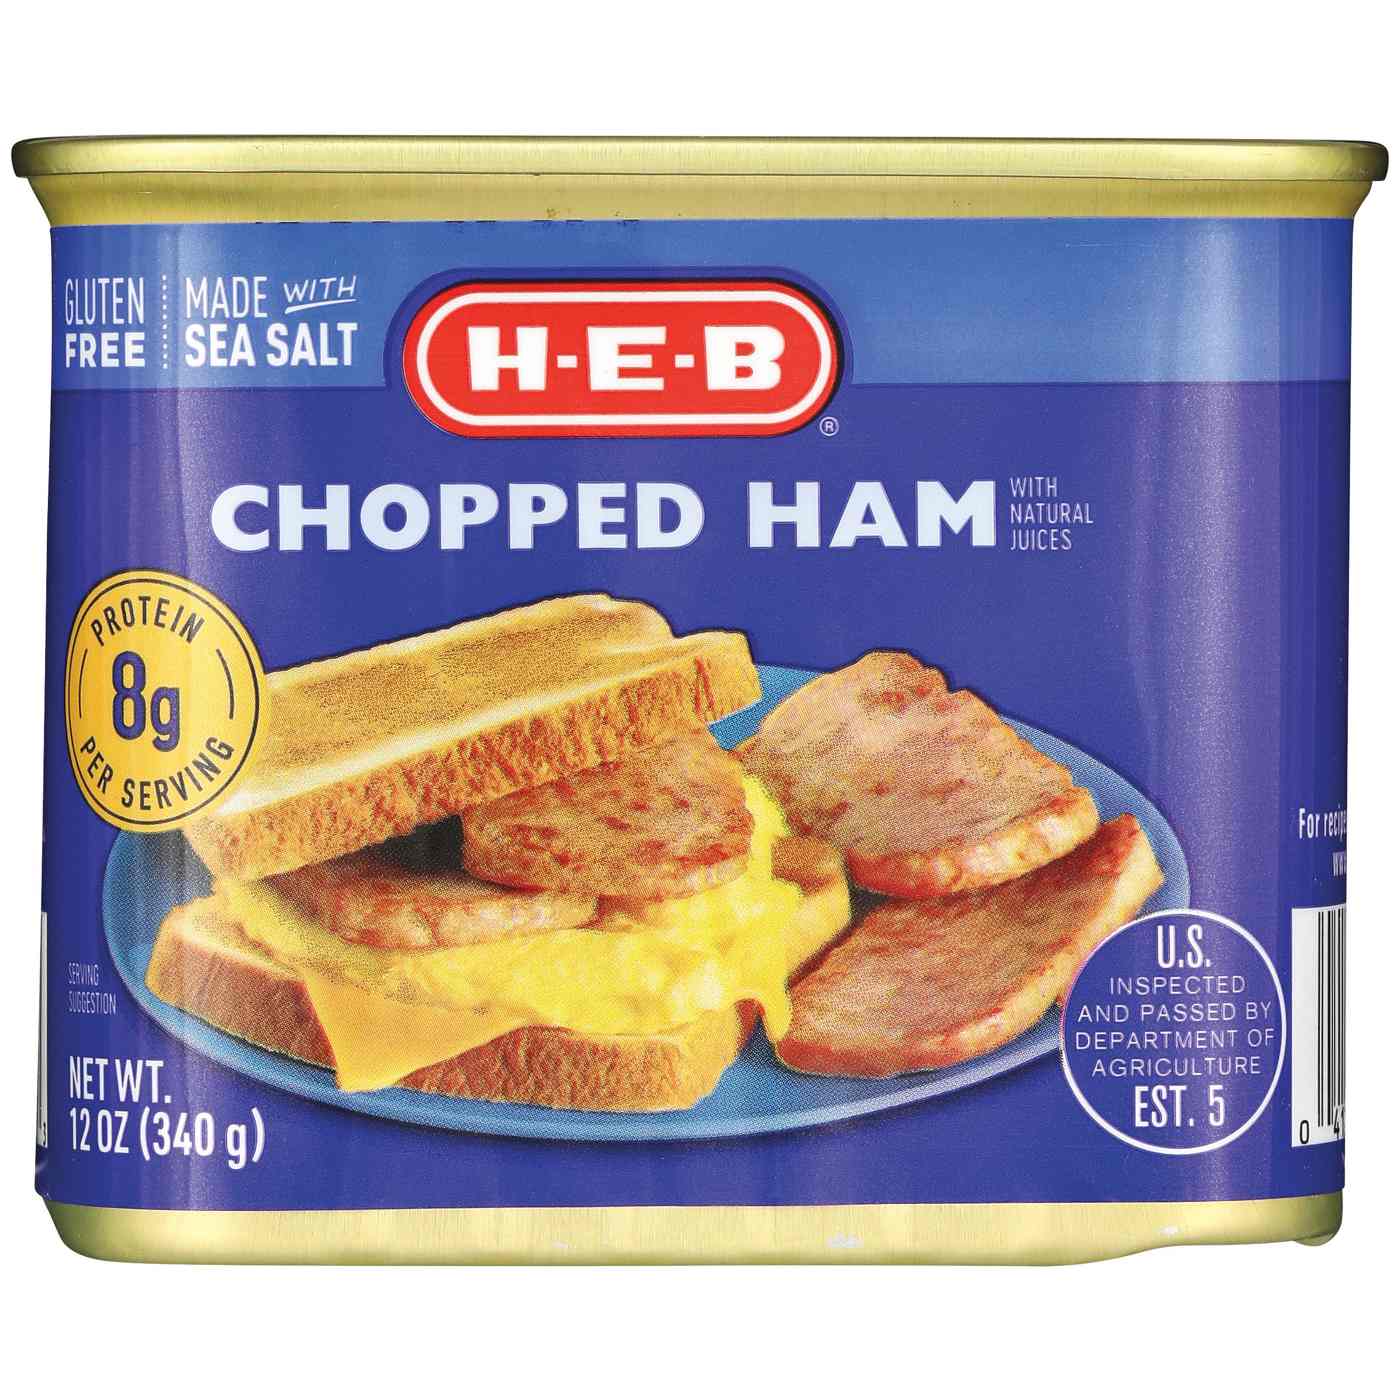 H-E-B Chopped Ham; image 1 of 2